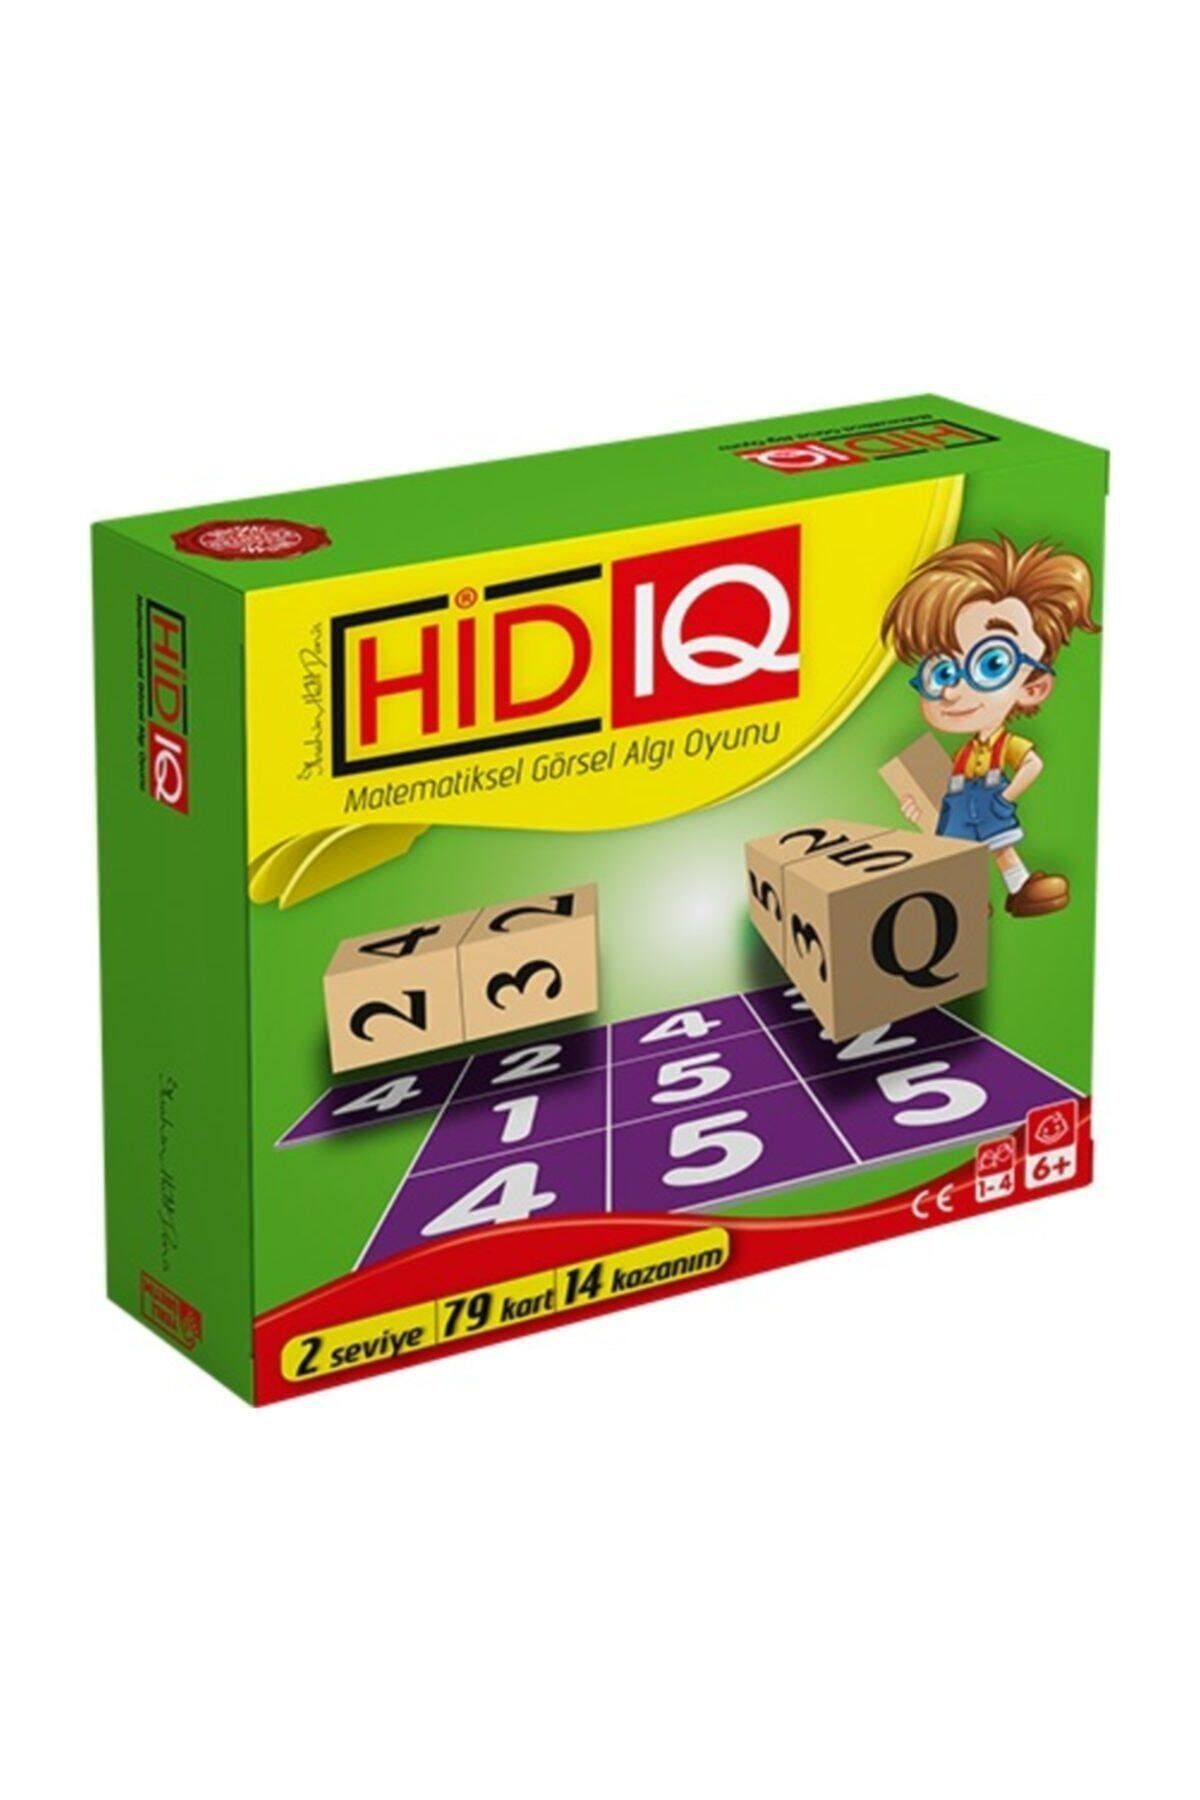 Canda Oyuncak Toli Games Hid Iq Matematiksel Görsel Algı Ve Zeka Oyunu